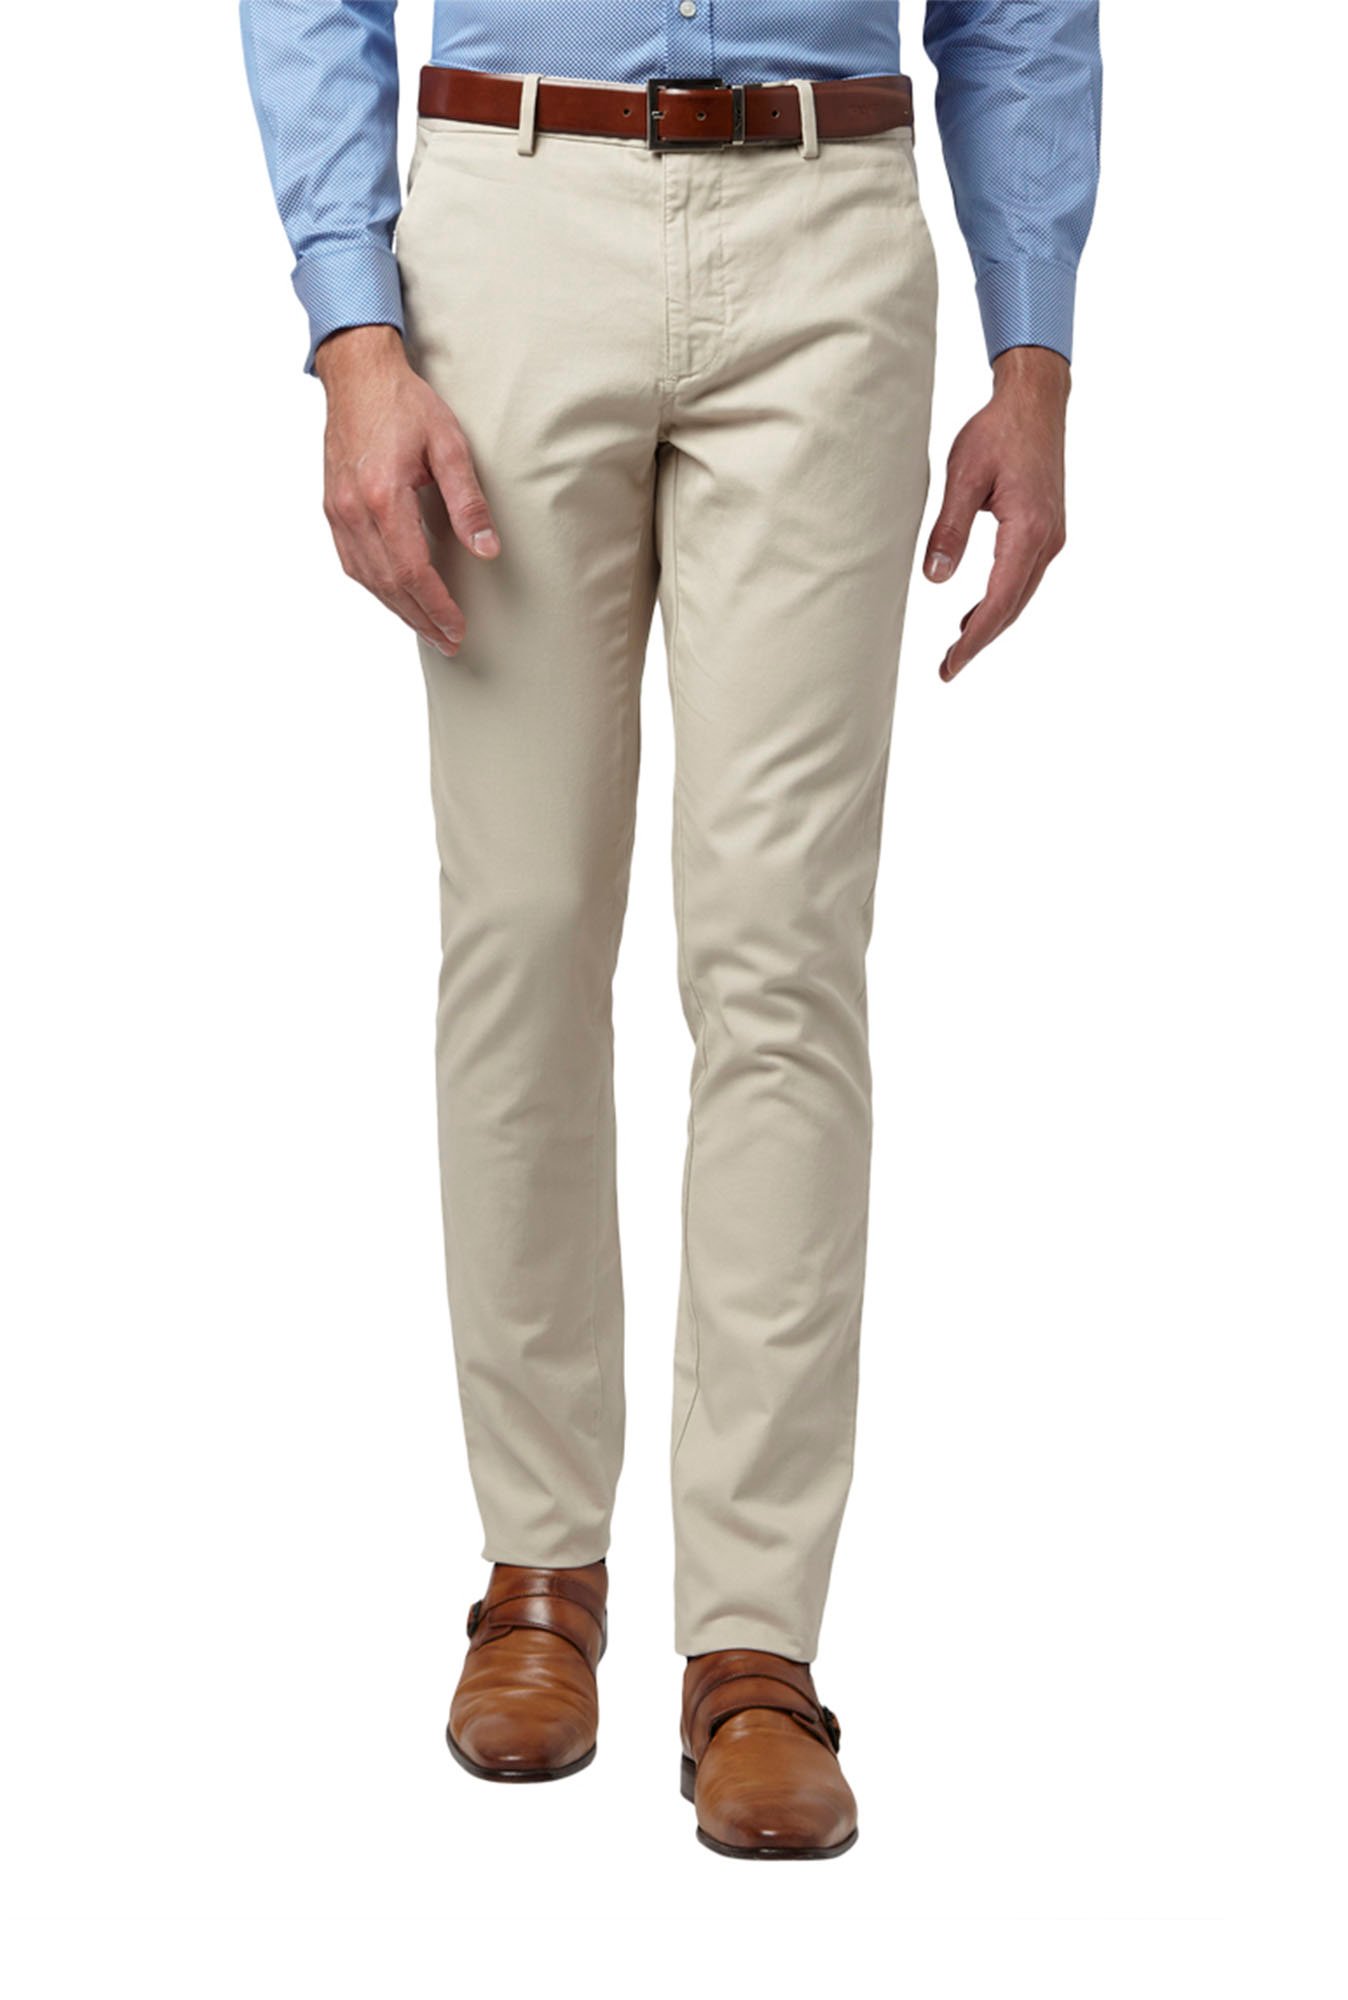 Buy Park Avenue Khaki Regular Fit Trousers for Men Online  Tata CLiQ